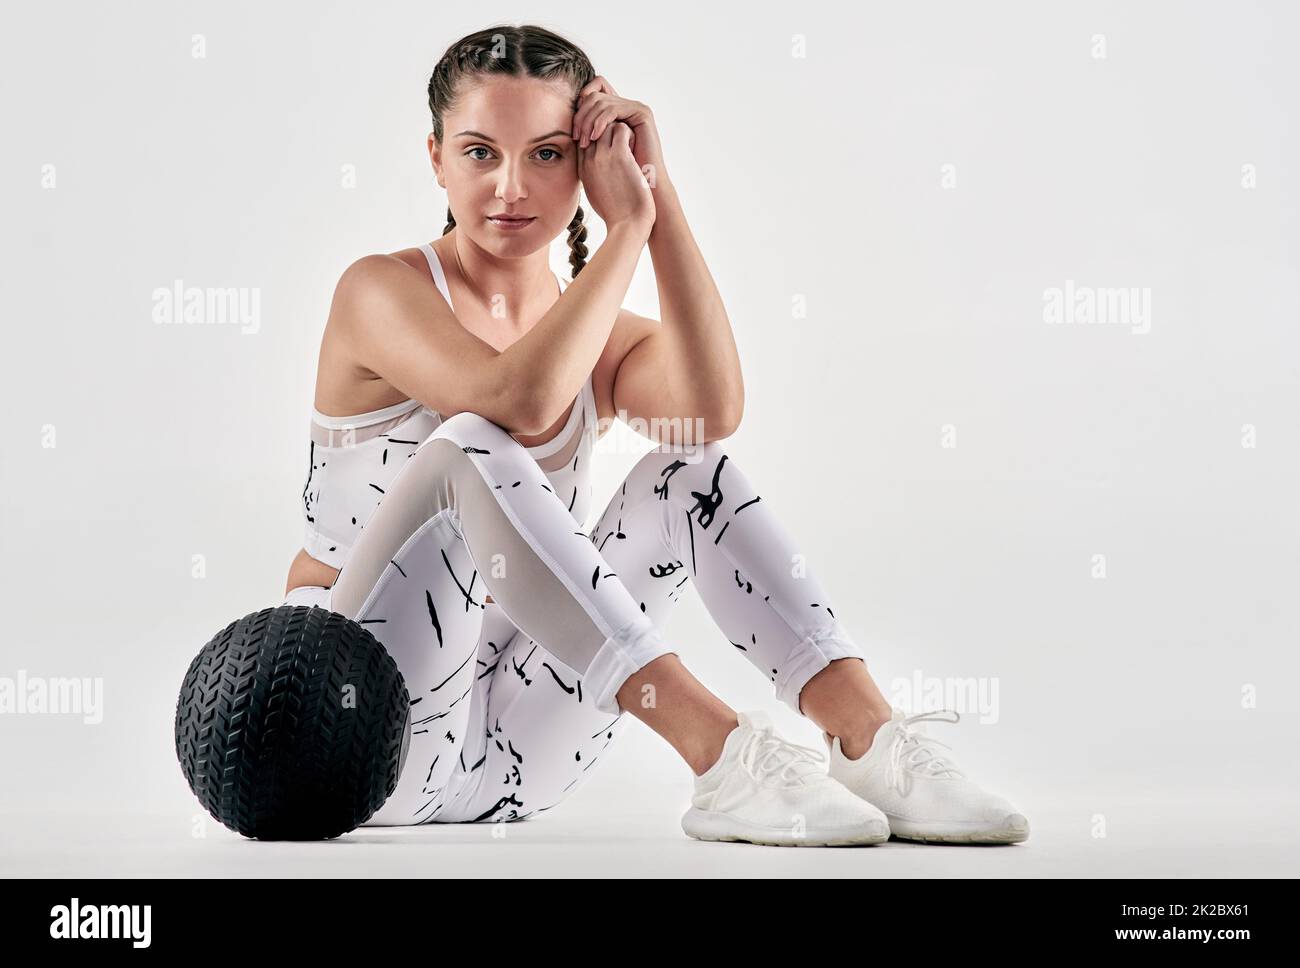 Ich verspreche mir, dass ich viel netter bin als mein ruhender Fitnessbereich. Studioportrait einer sportlichen jungen Frau, die mit einem Übungsball vor weißem Hintergrund posiert. Stockfoto